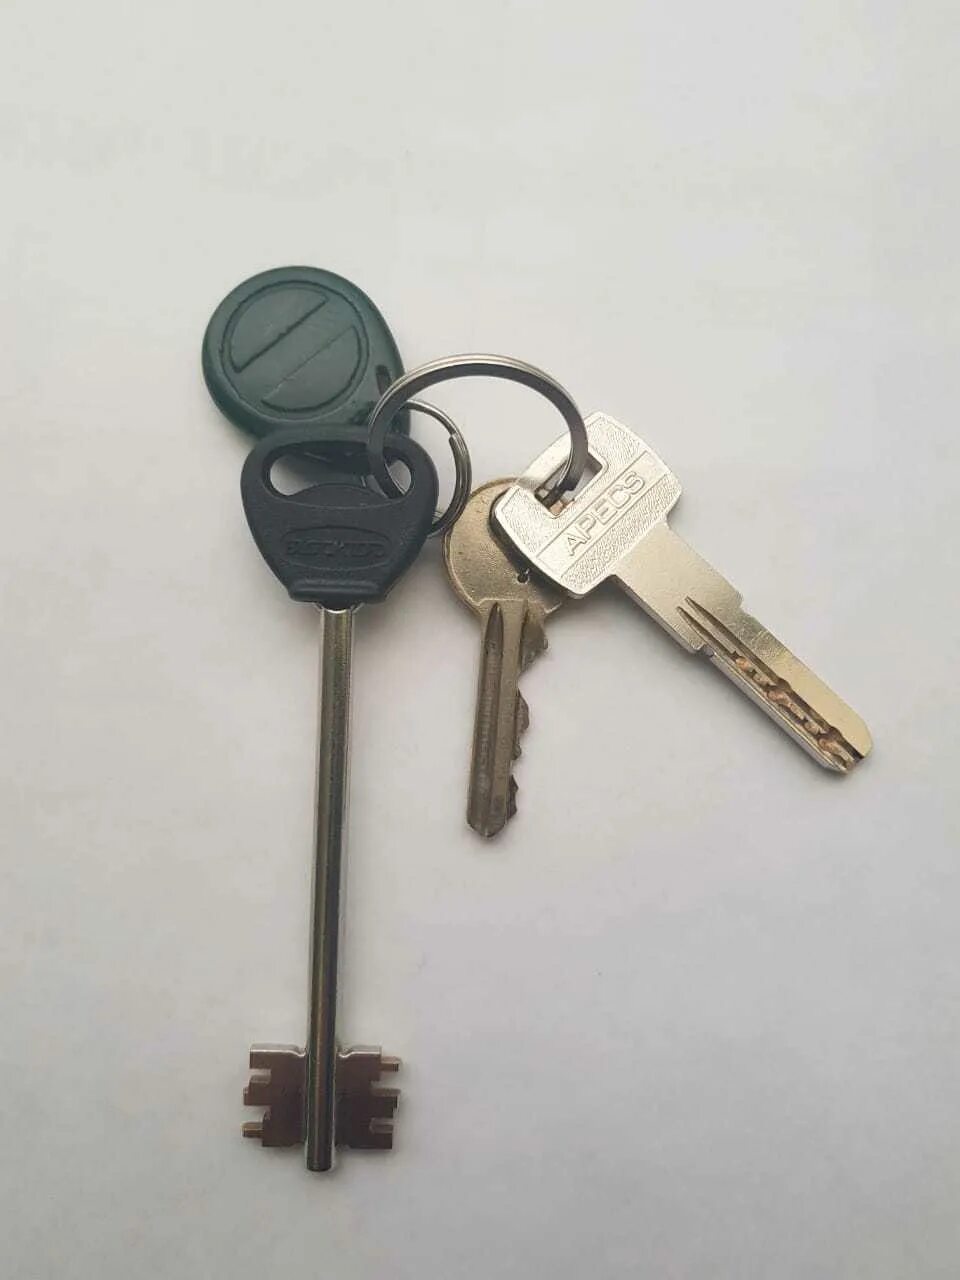 Найдены ключи Уфа. Находки ключей. Нашёл ключи Нижний Тагил. Найдены ключи Москва.